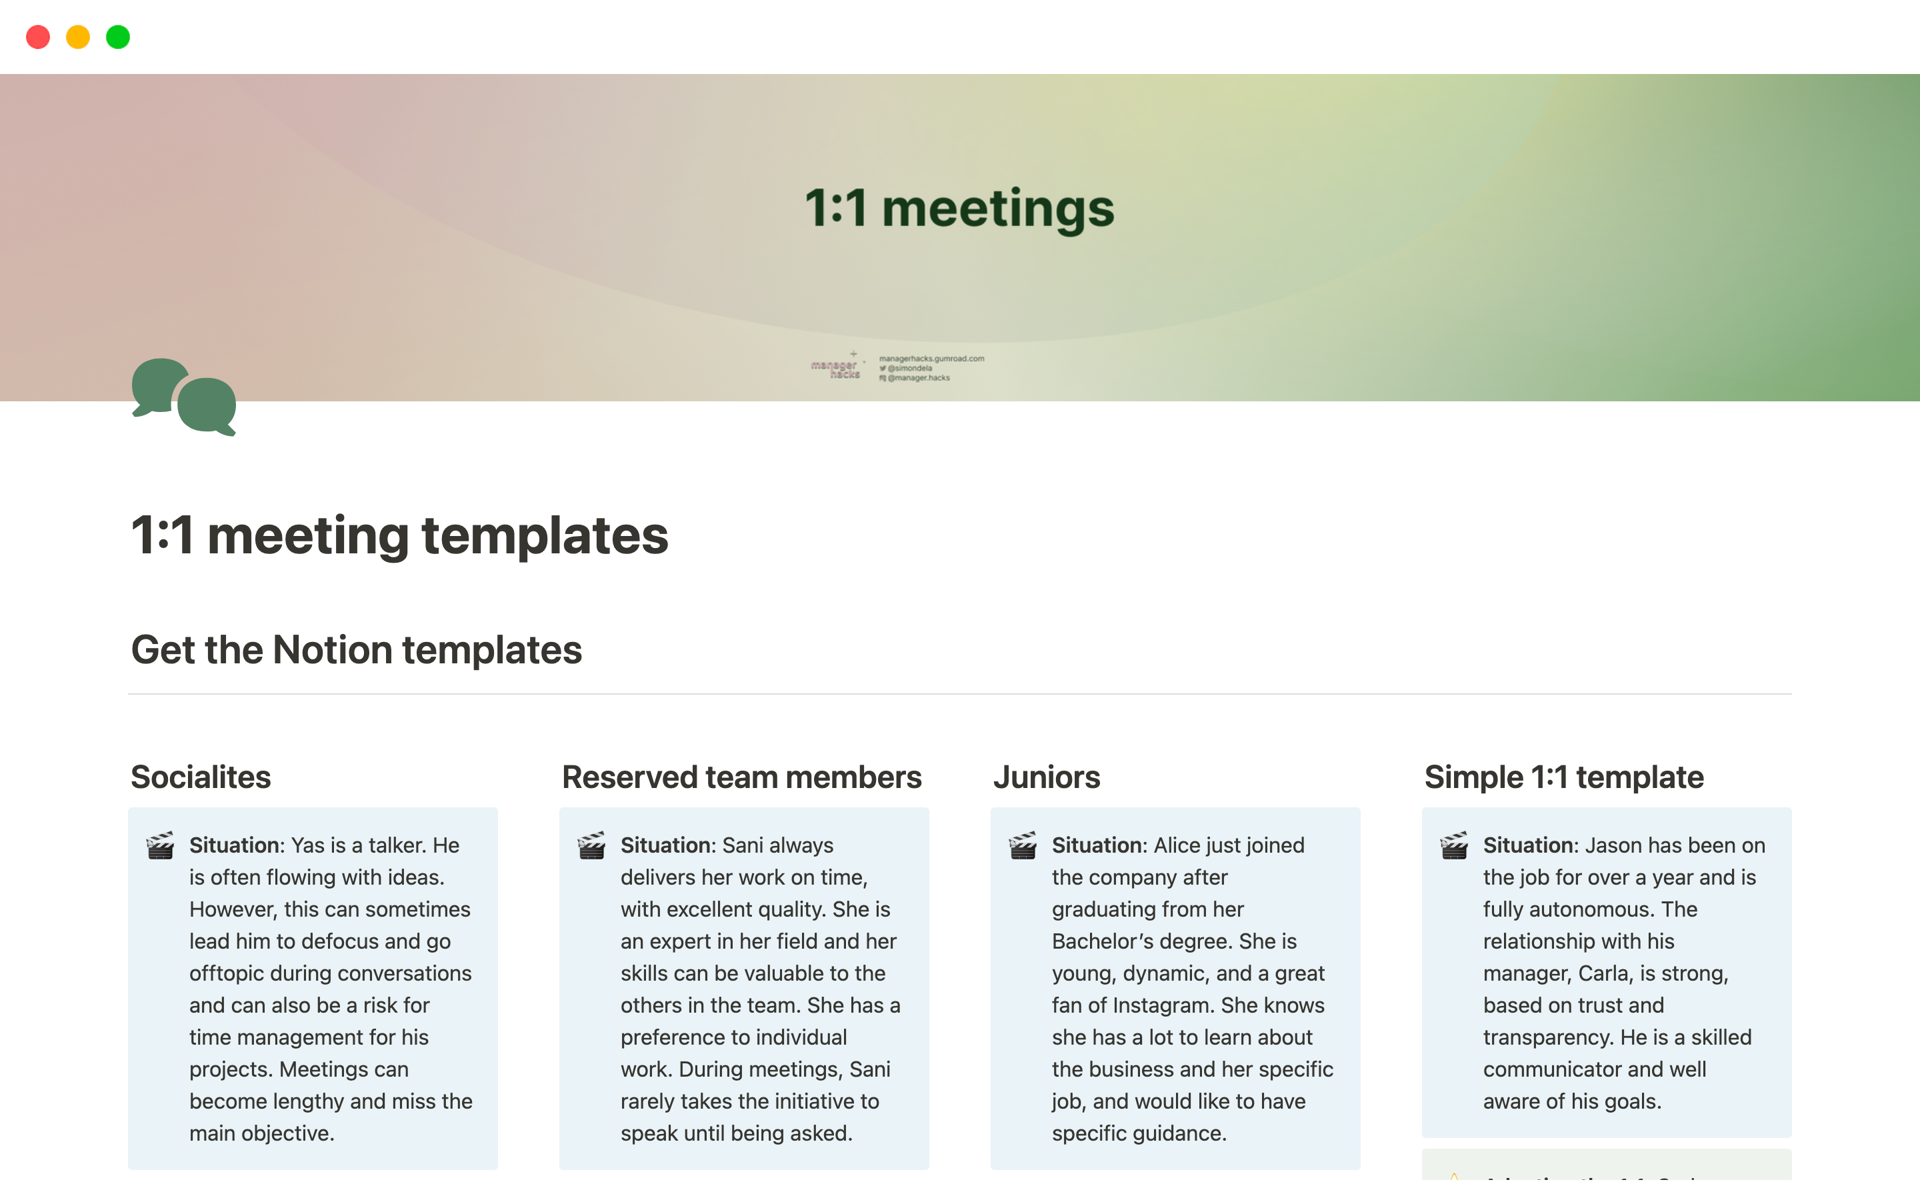 Vista previa de una plantilla para 1:1 meeting - 4 templates to personalise your 1:1s